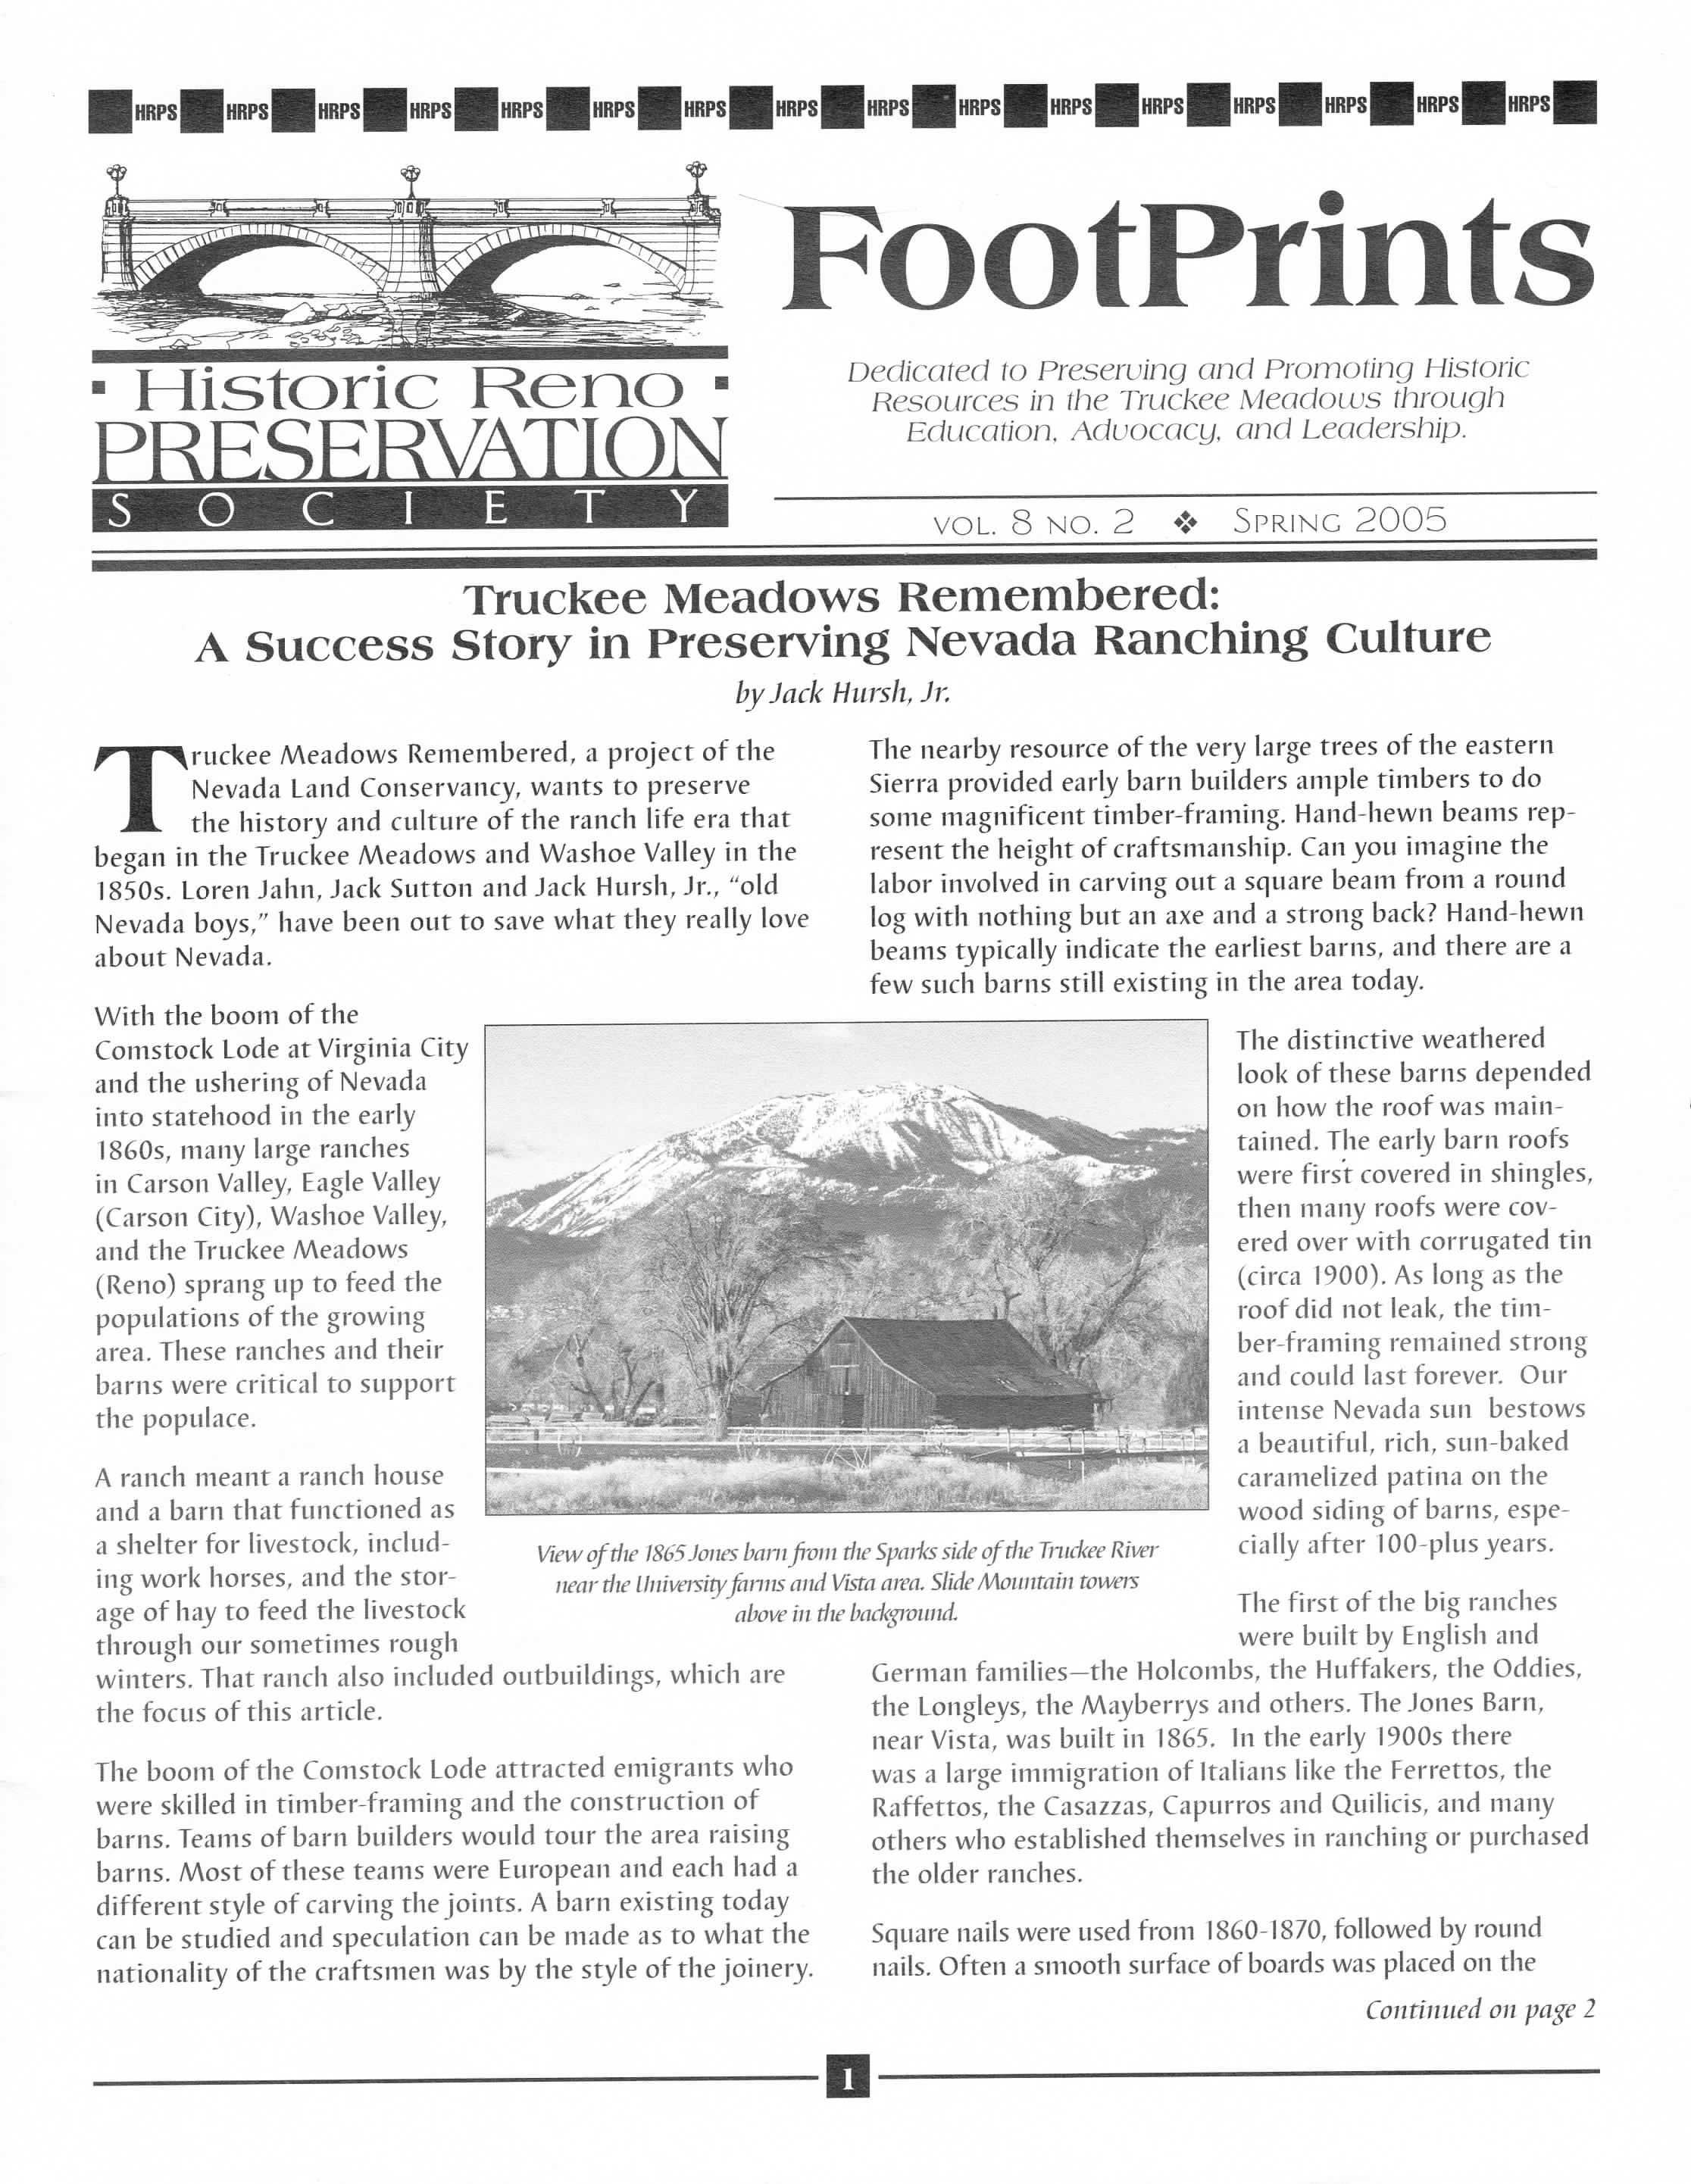 FootPrints Volume 8, Number 2, Spring 2005